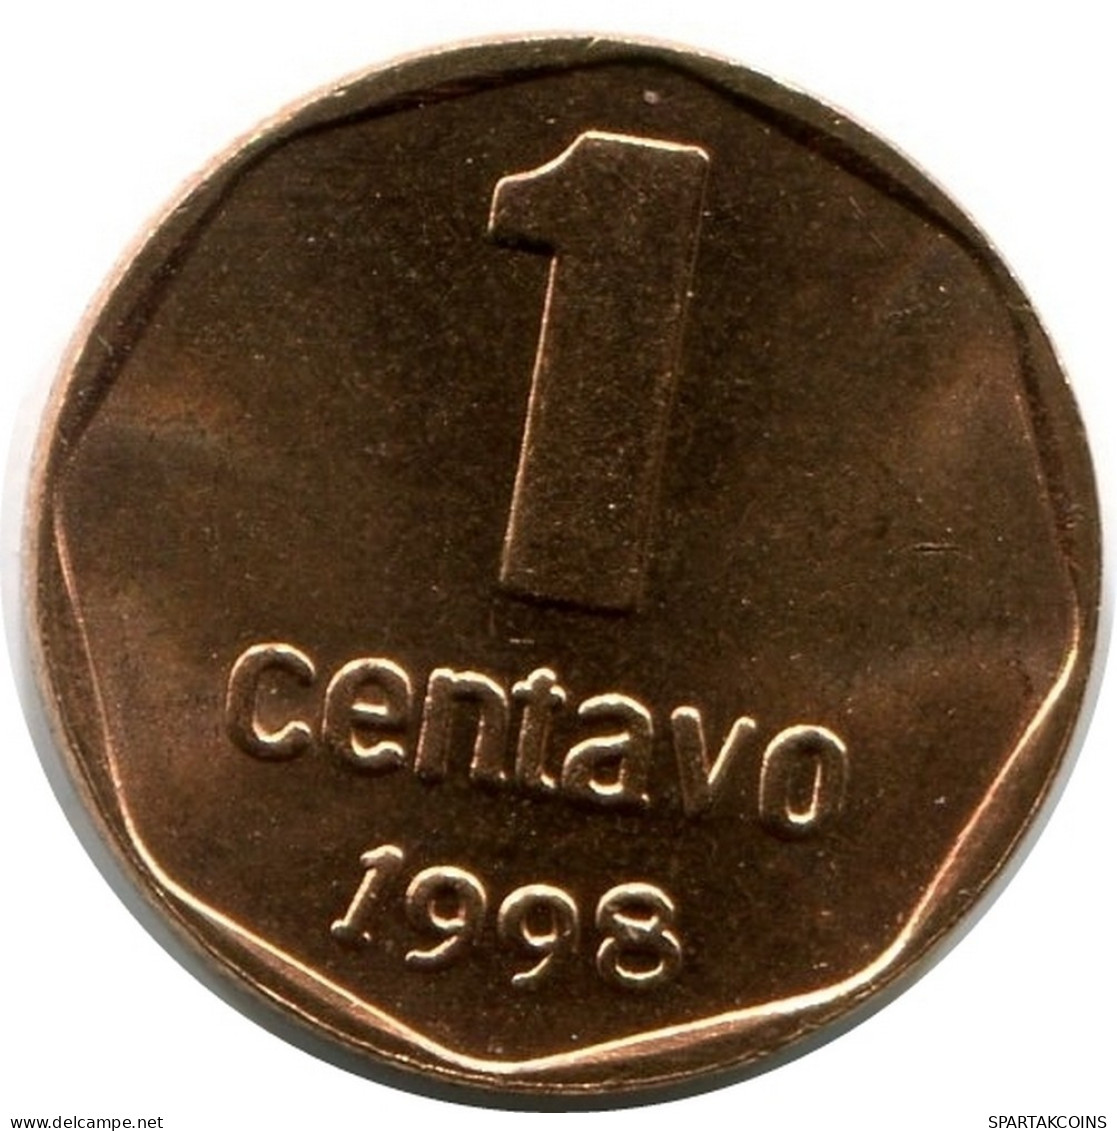 1 CENTAVO 1998 ARGENTINA Coin UNC #M10131.U.A - Argentina